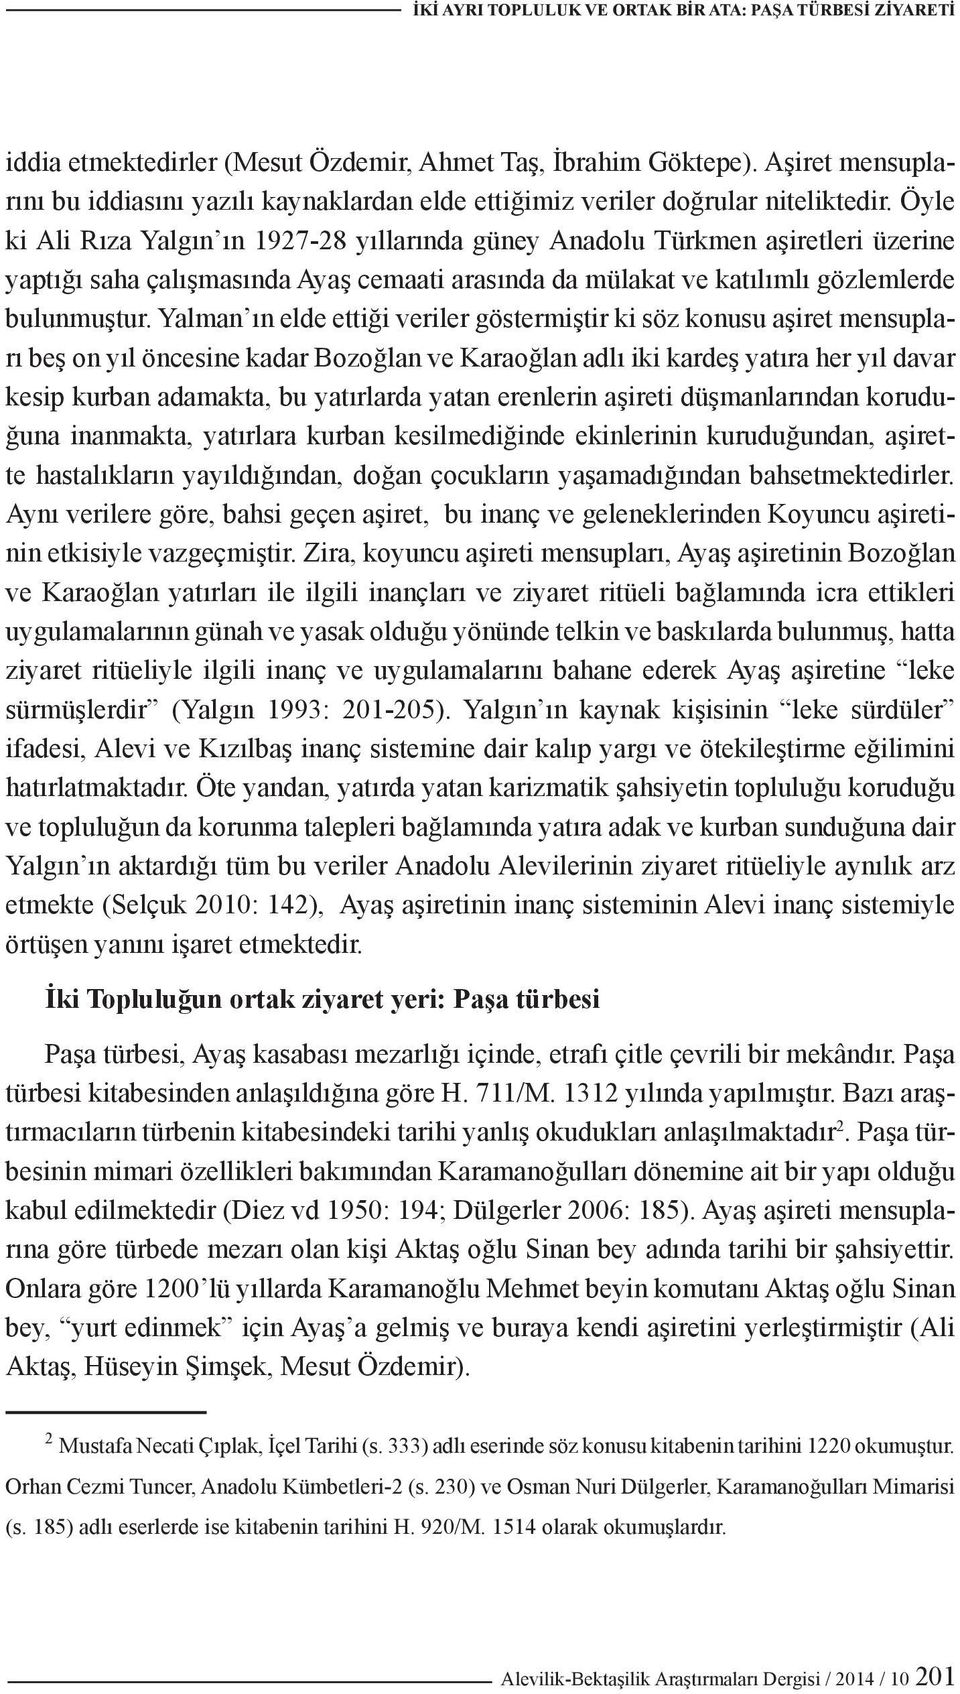 Öyle ki Ali Rıza Yalgın ın 1927-28 yıllarında güney Anadolu Türkmen aşiretleri üzerine yaptığı saha çalışmasında Ayaş cemaati arasında da mülakat ve katılımlı gözlemlerde bulunmuştur.